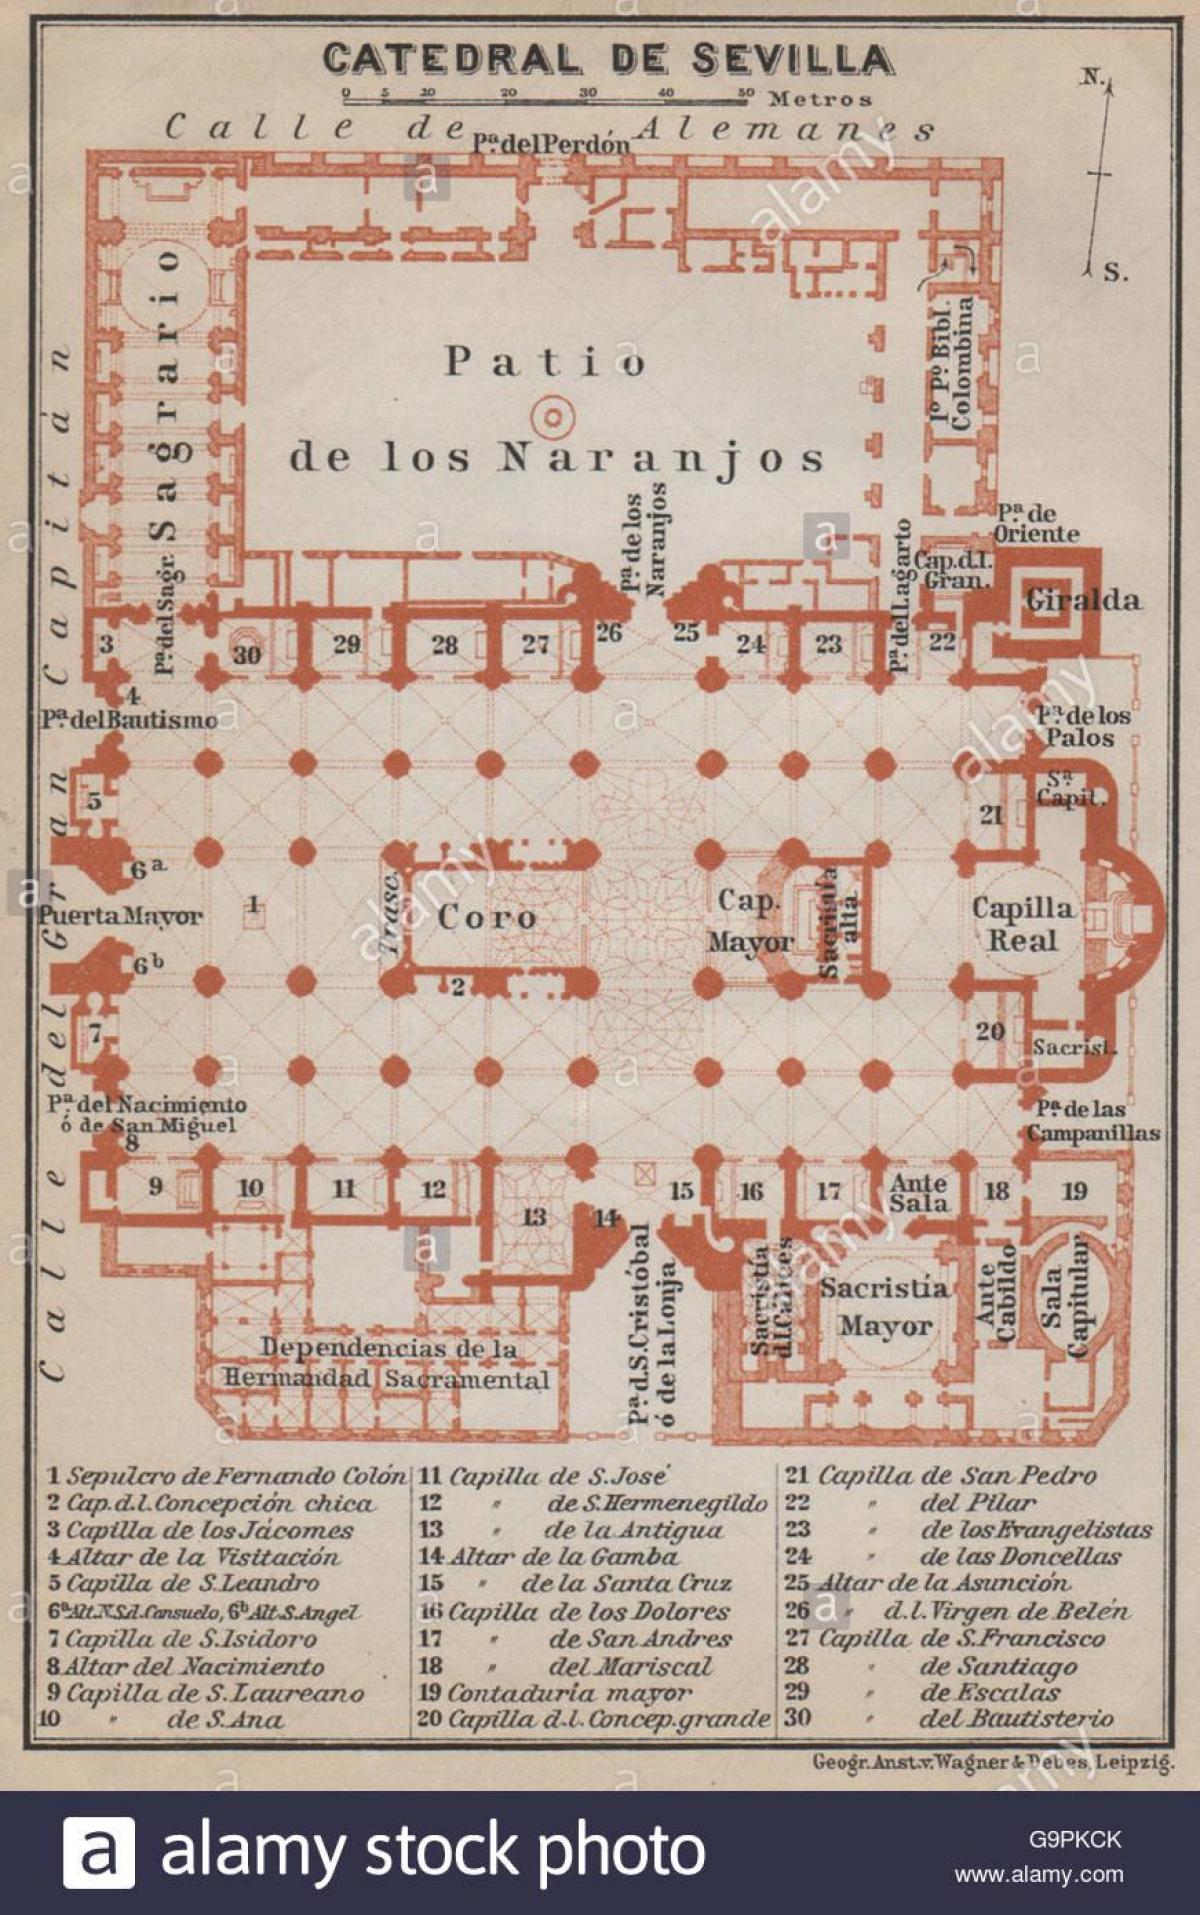 mapa da catedral de Sevilla